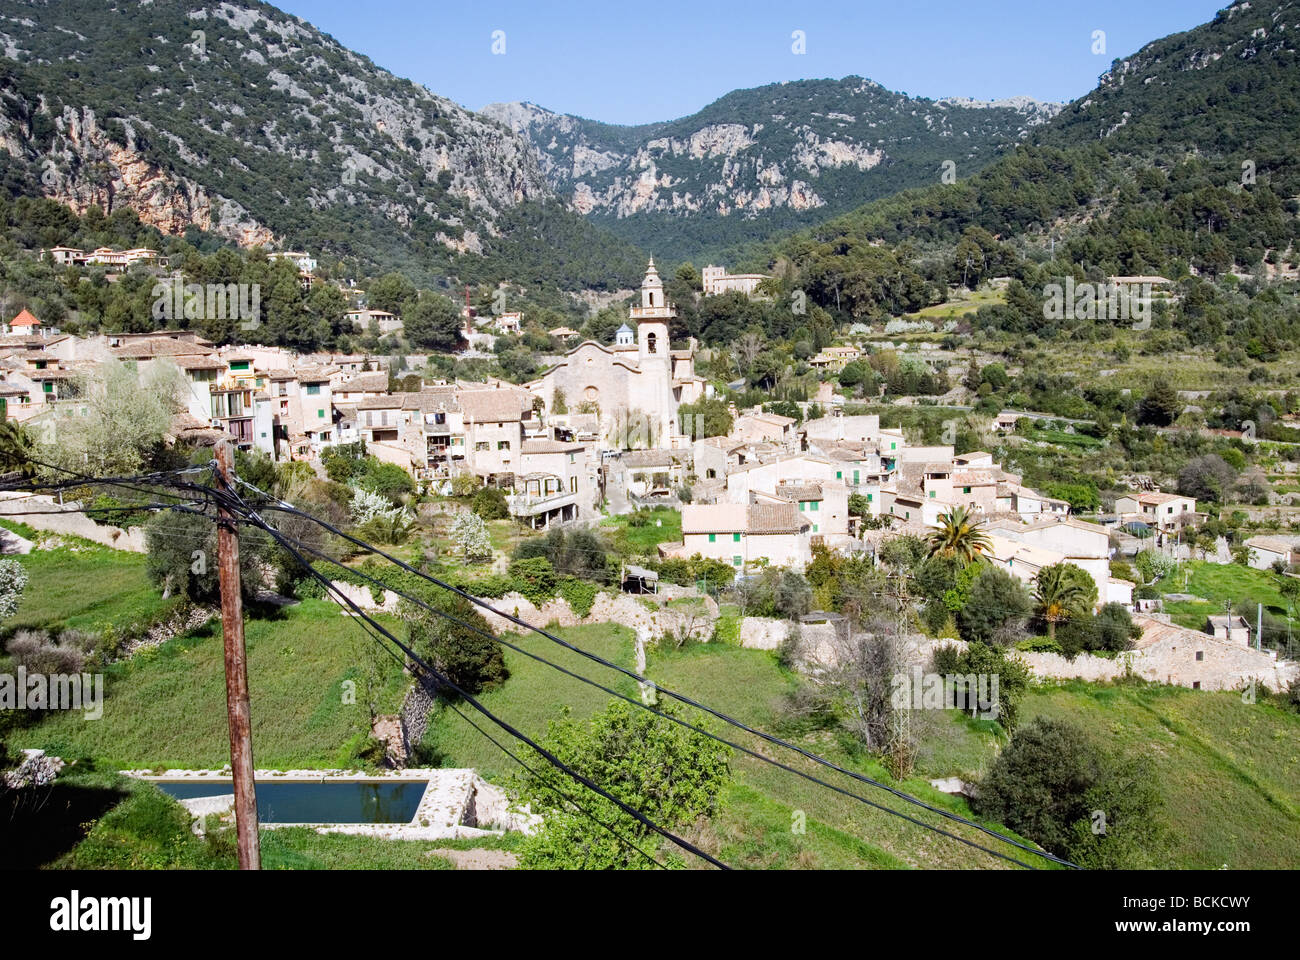 The village Valldemossa on the Balearic Island Mallorca, Spain. Stock Photo